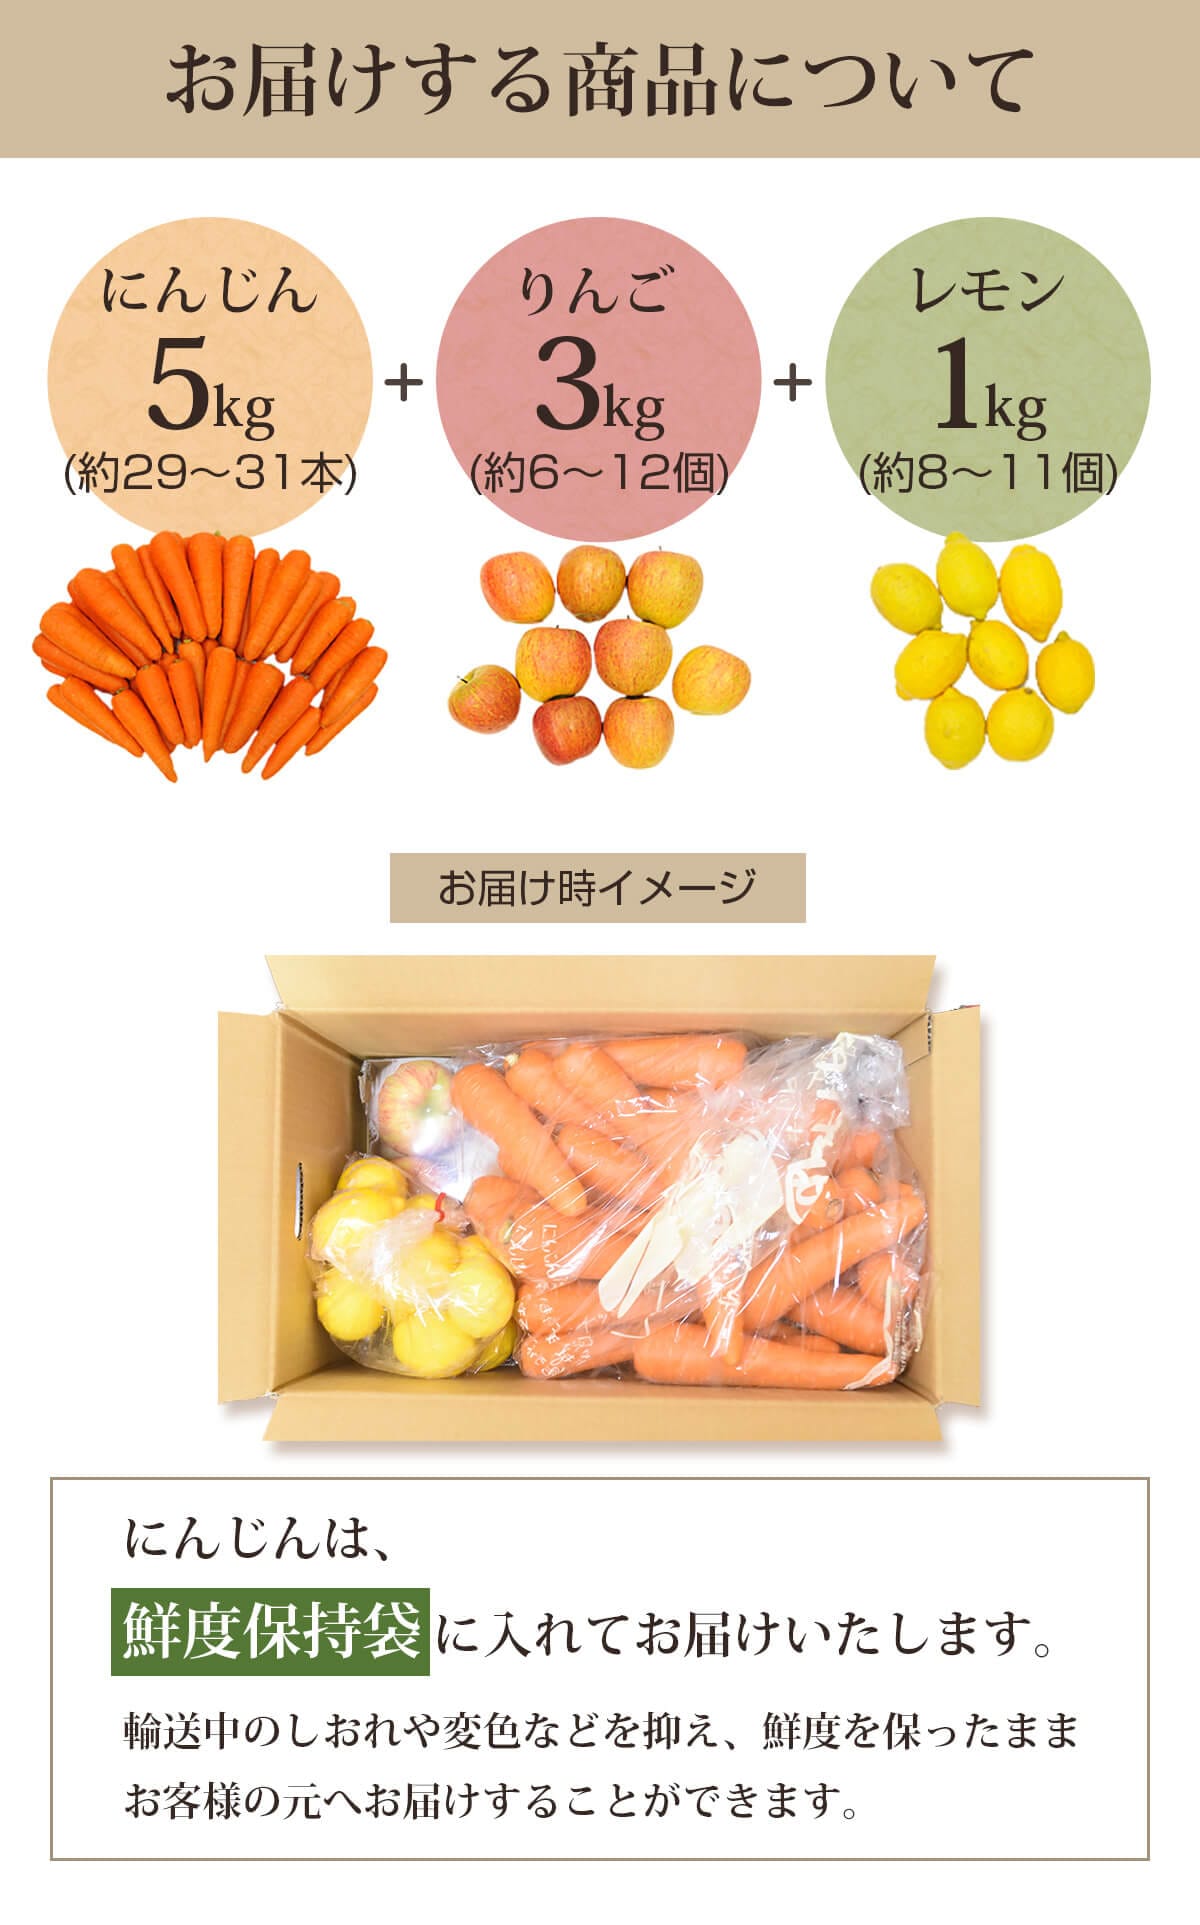 お届けする商品（人参5kg＋りんご3kg＋レモン1kg）